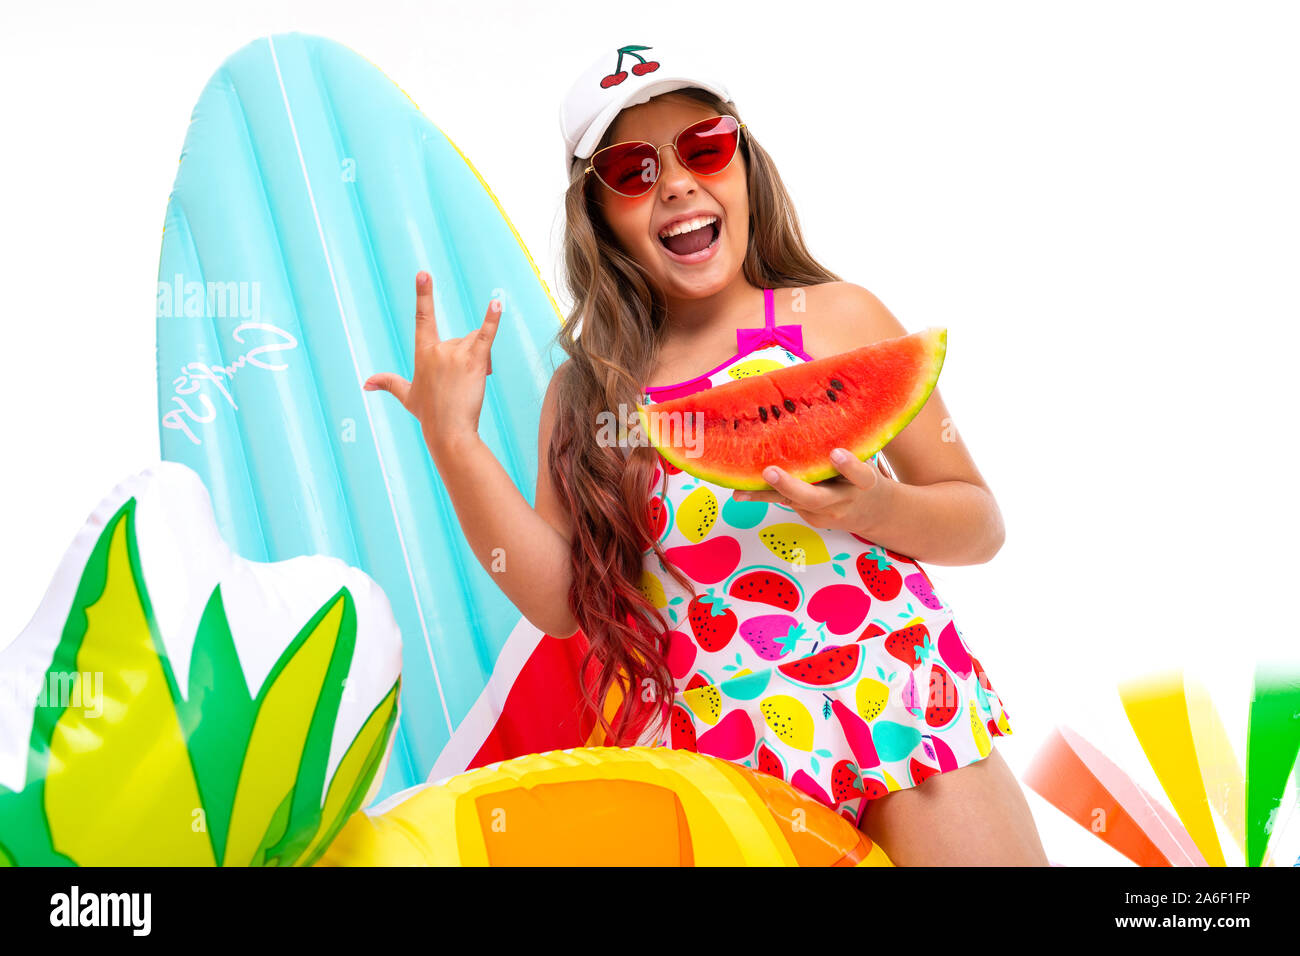 Coole Mädchen mit langen gekreuzigt Haar in Sonnenbrille und Sonnencreme, steht in der Nähe von aufblasbaren Matratzen mit einer Wassermelone Stockfoto